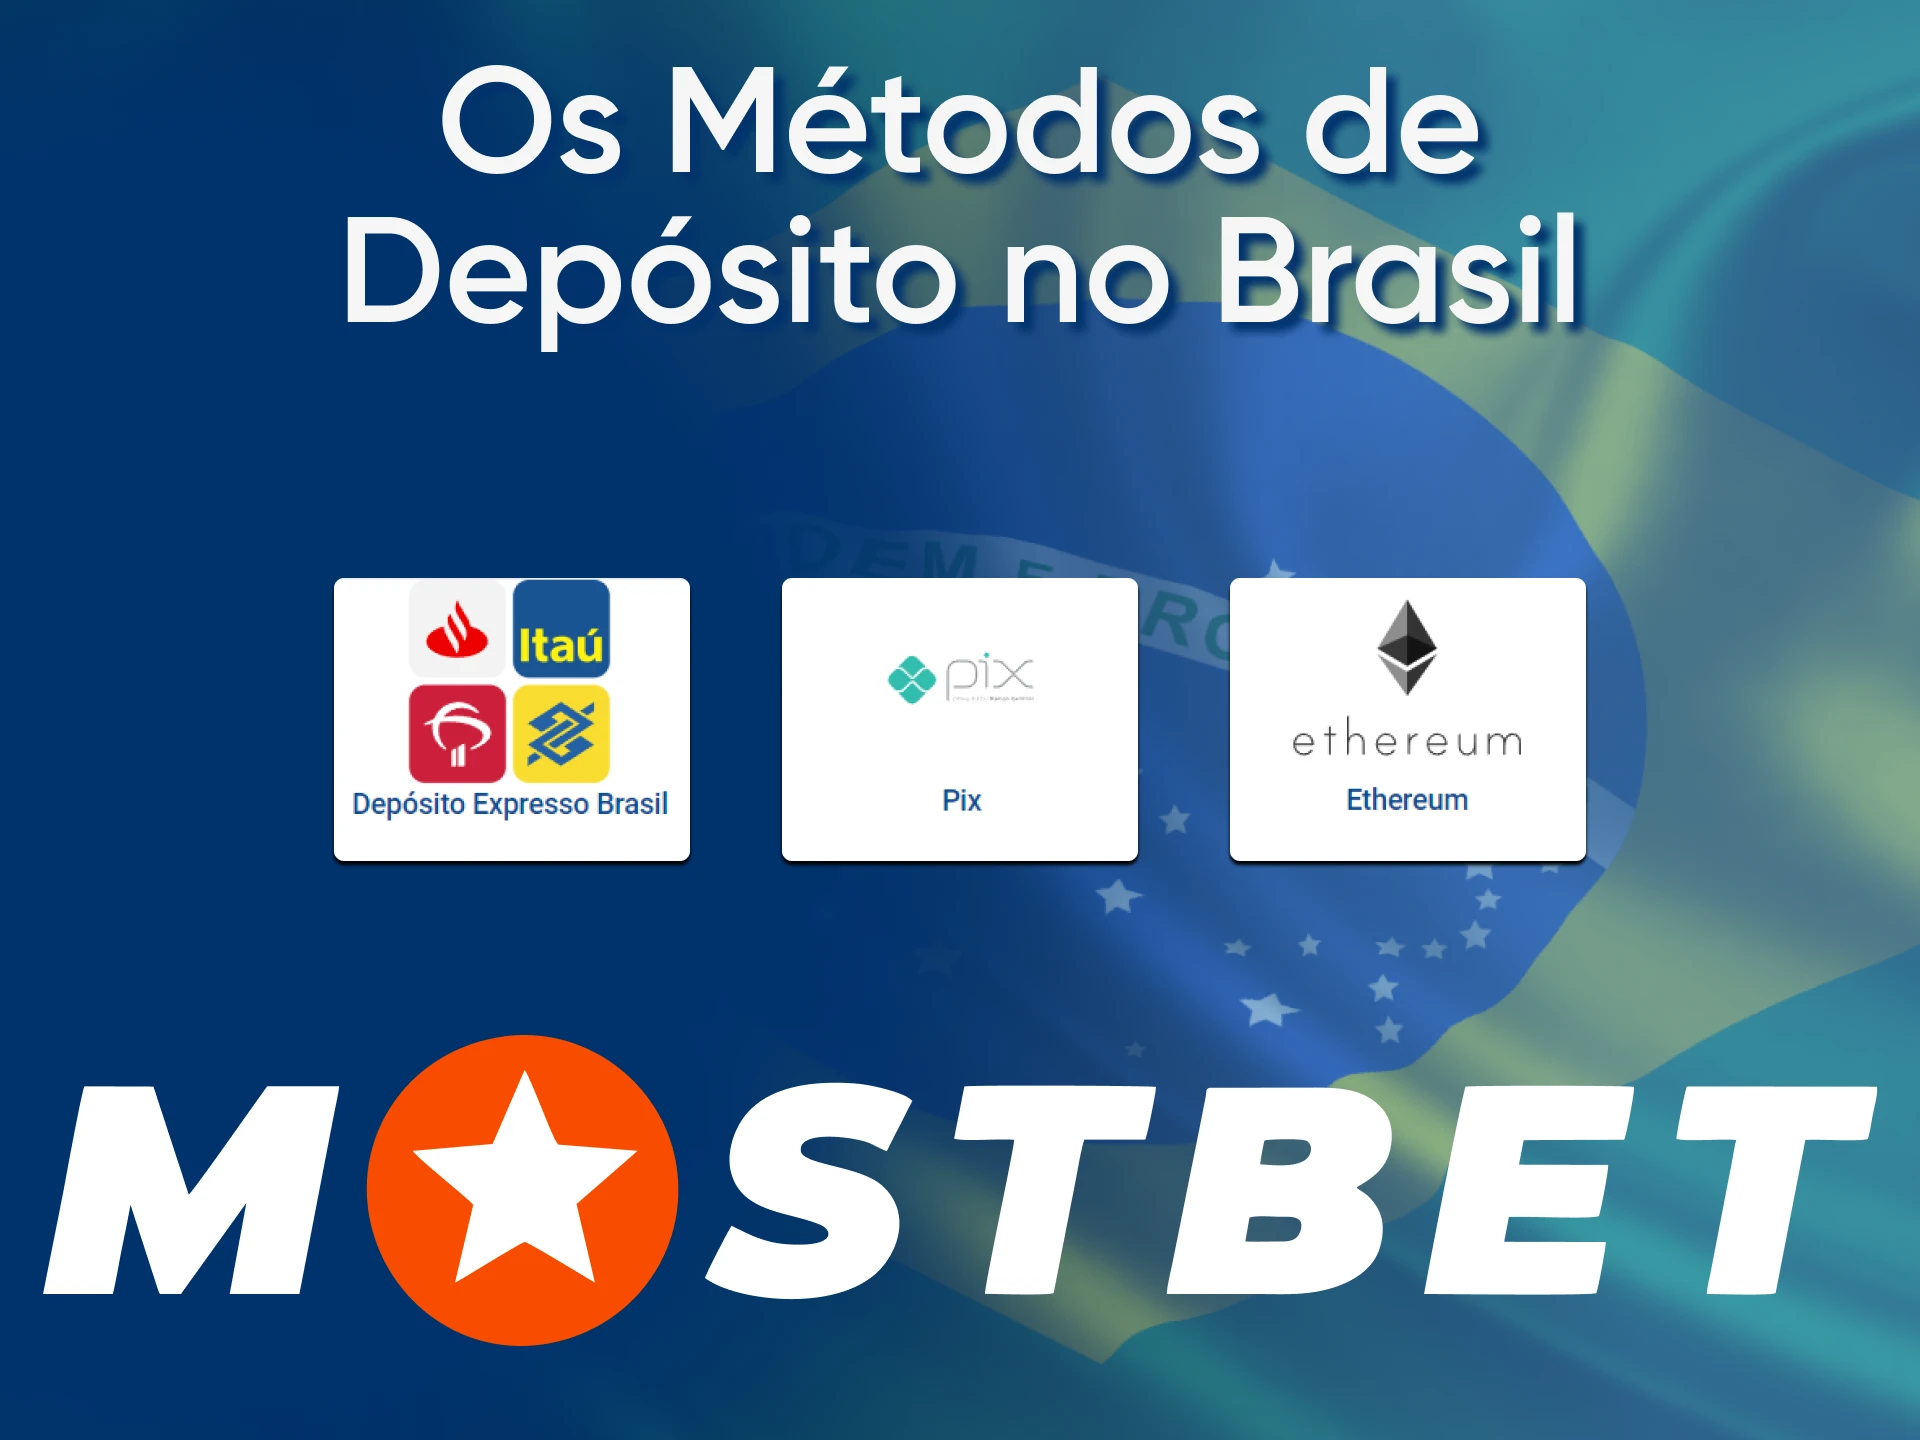 A Mostbet apóia sistemas de pagamento internacionais e locais.